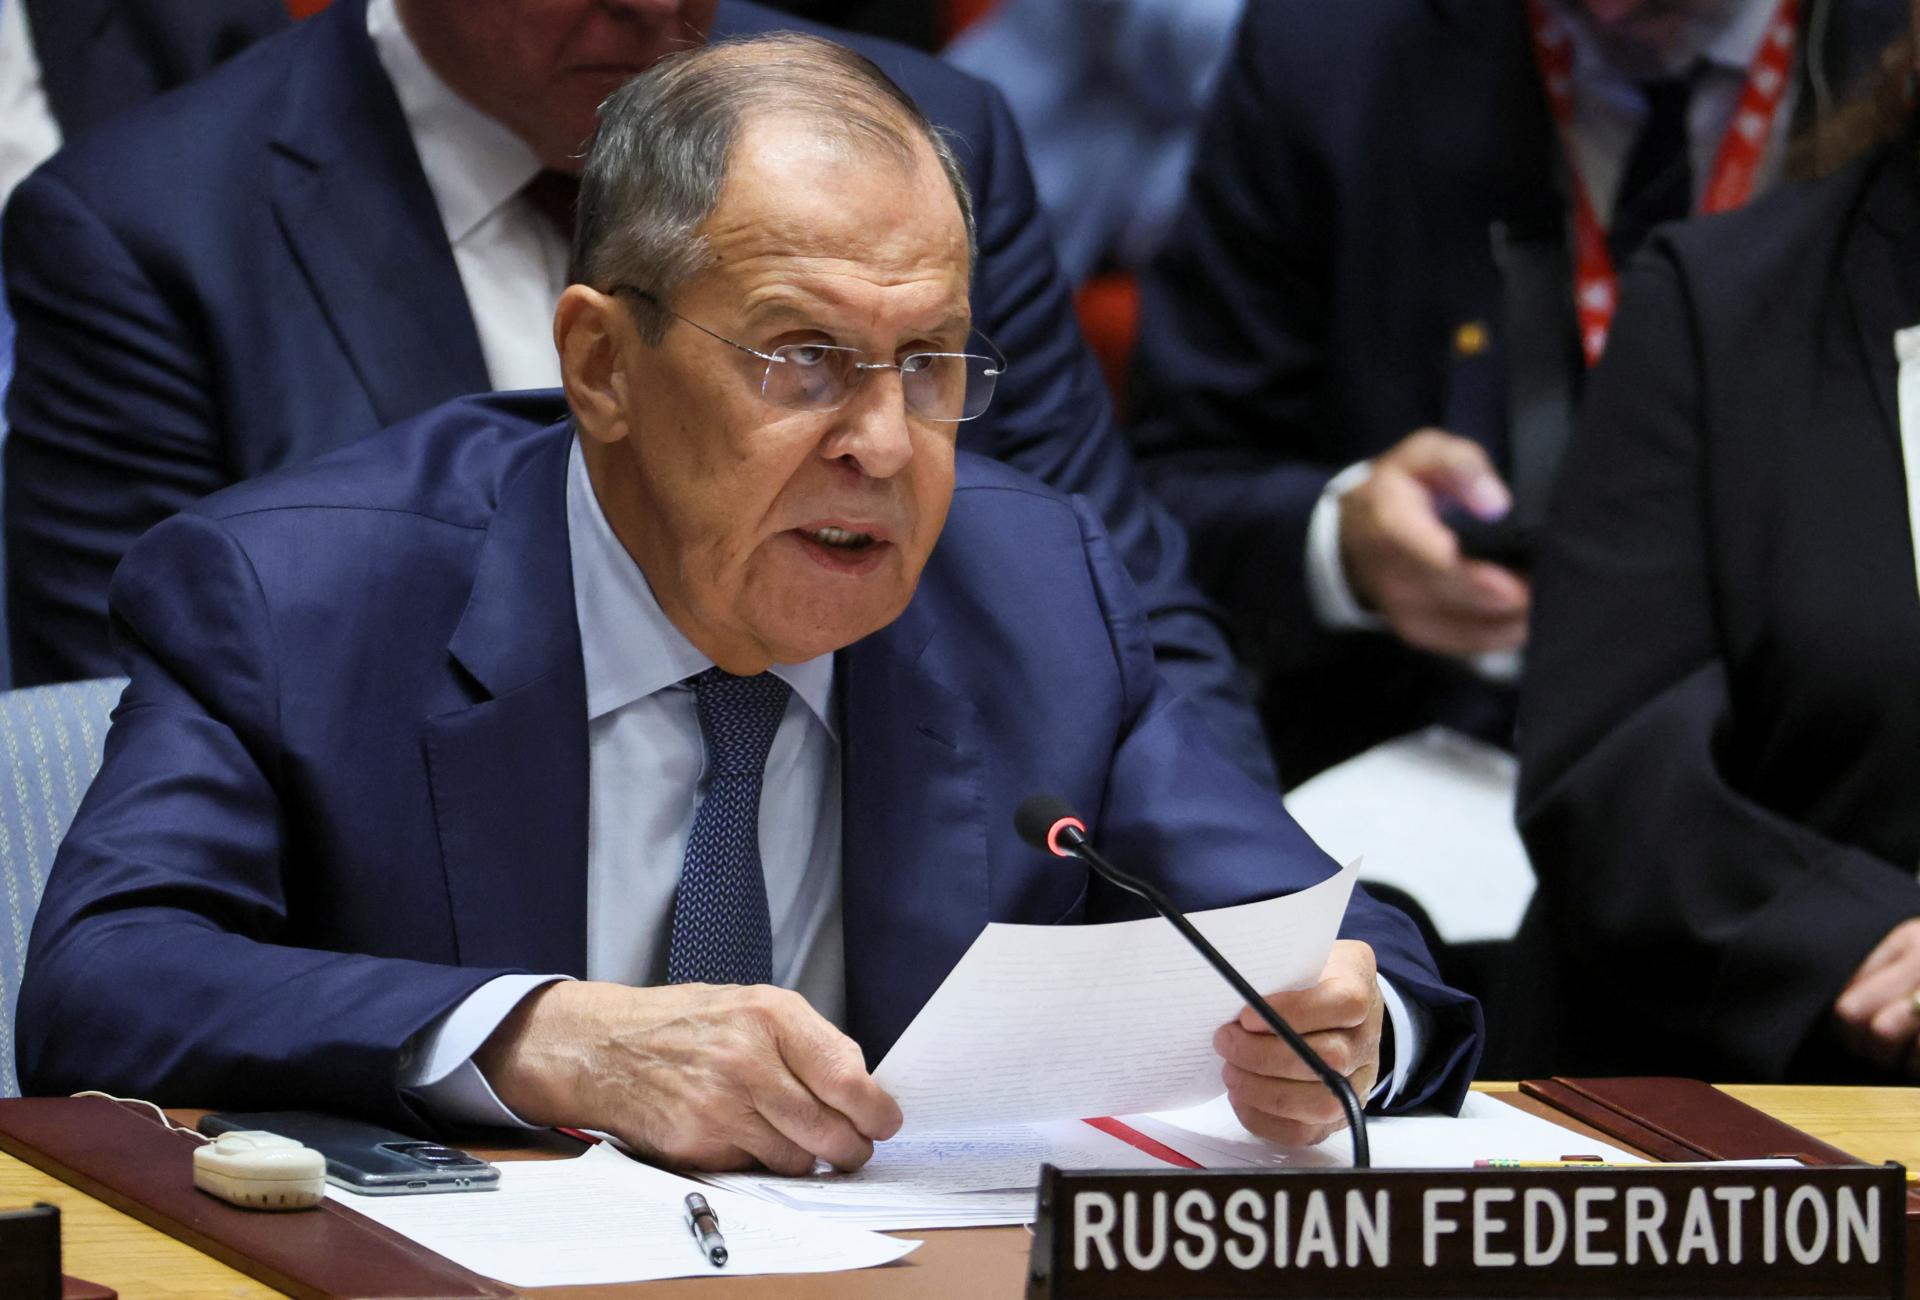 Lavrov v Bezpečnostnej rade OSN obhajoval ruské právo veta, Zelenskyj ho chcel prekonať